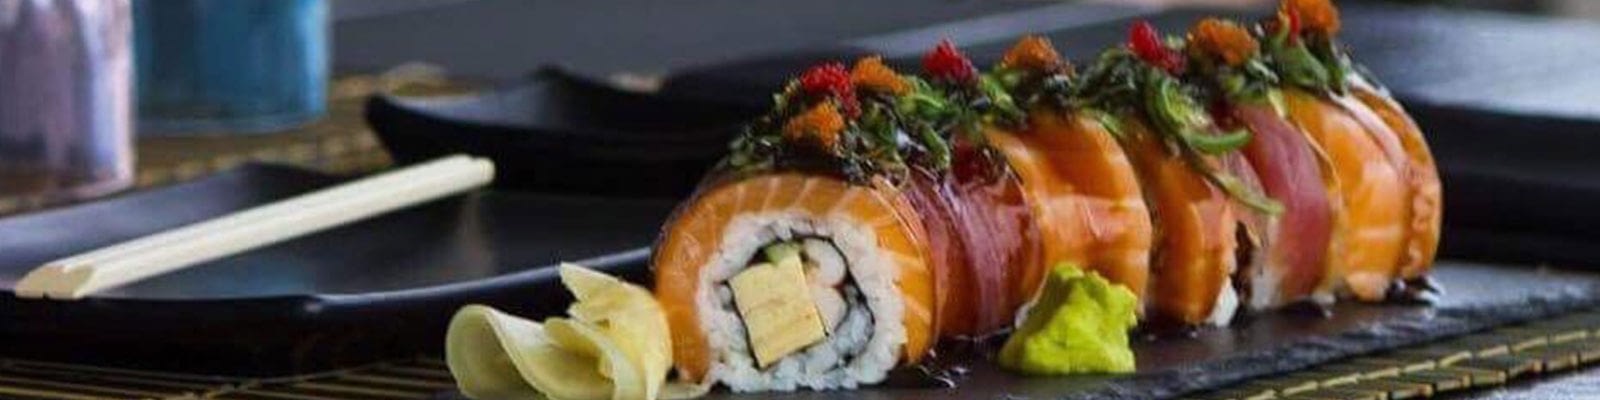 osaka-sushi-restaurant-bonaire-slider-image-3